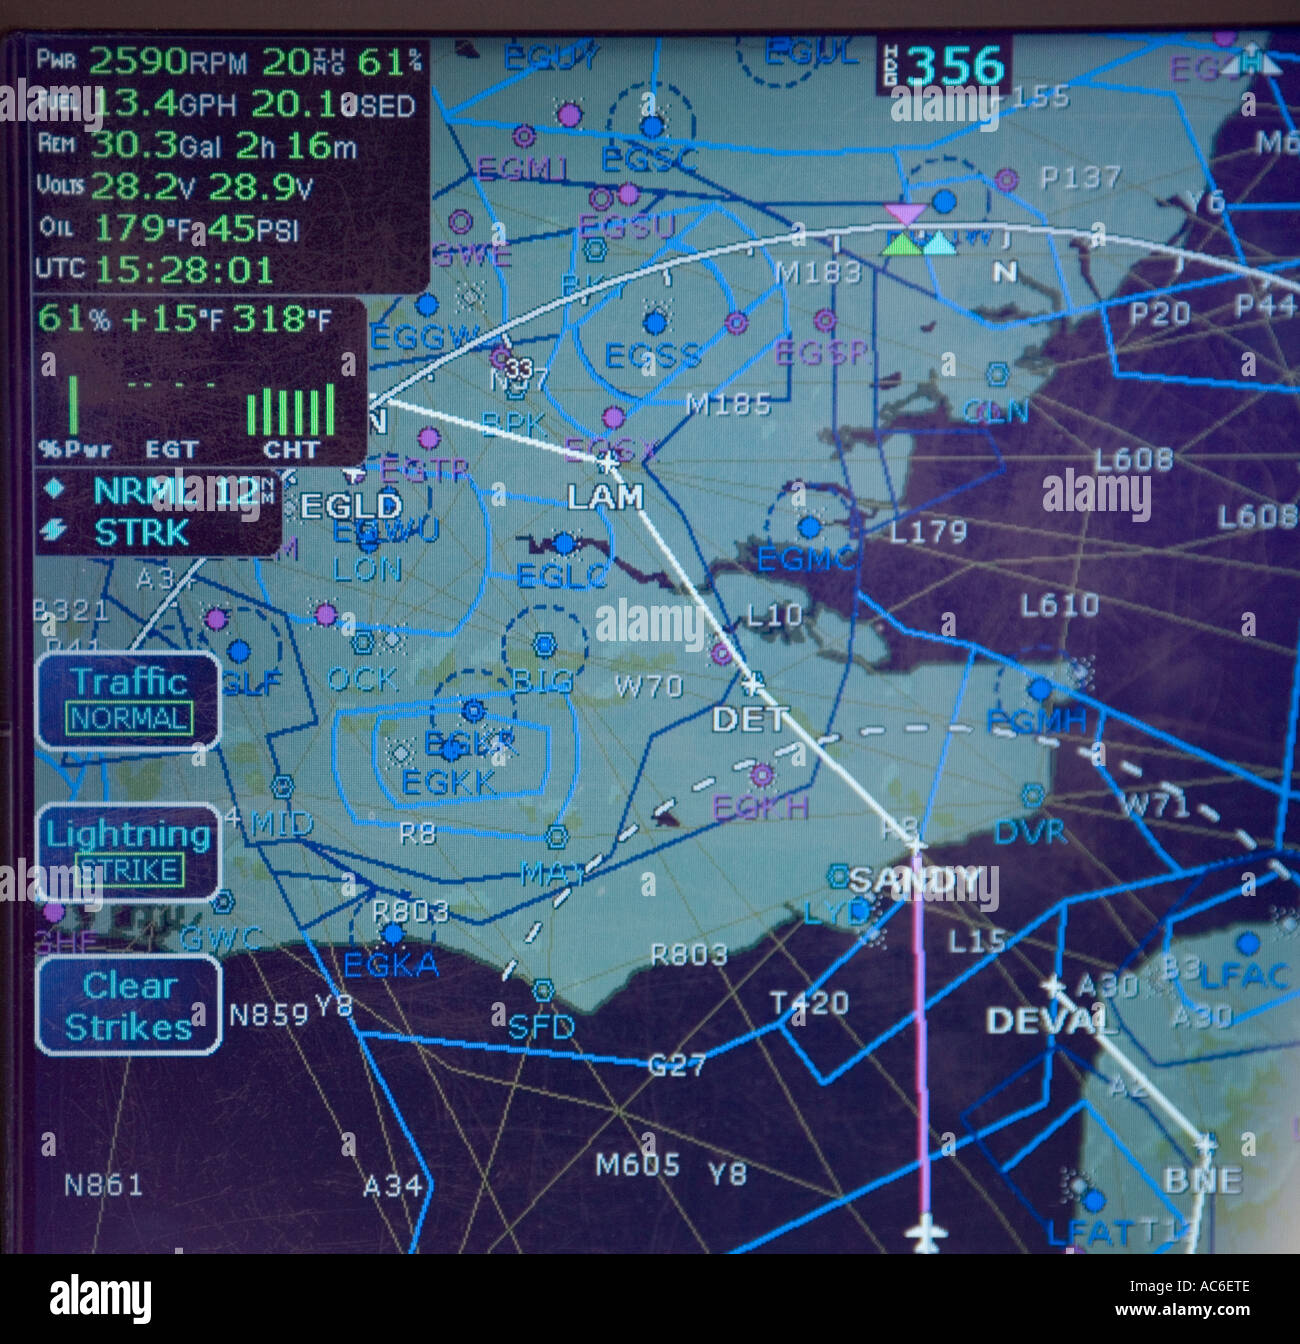 Während des Fluges und Überschrift für Denham Flugplatz, Böcke, Südengland - Cirrus SR22 Leichtflugzeug Bildschirm Stockfoto